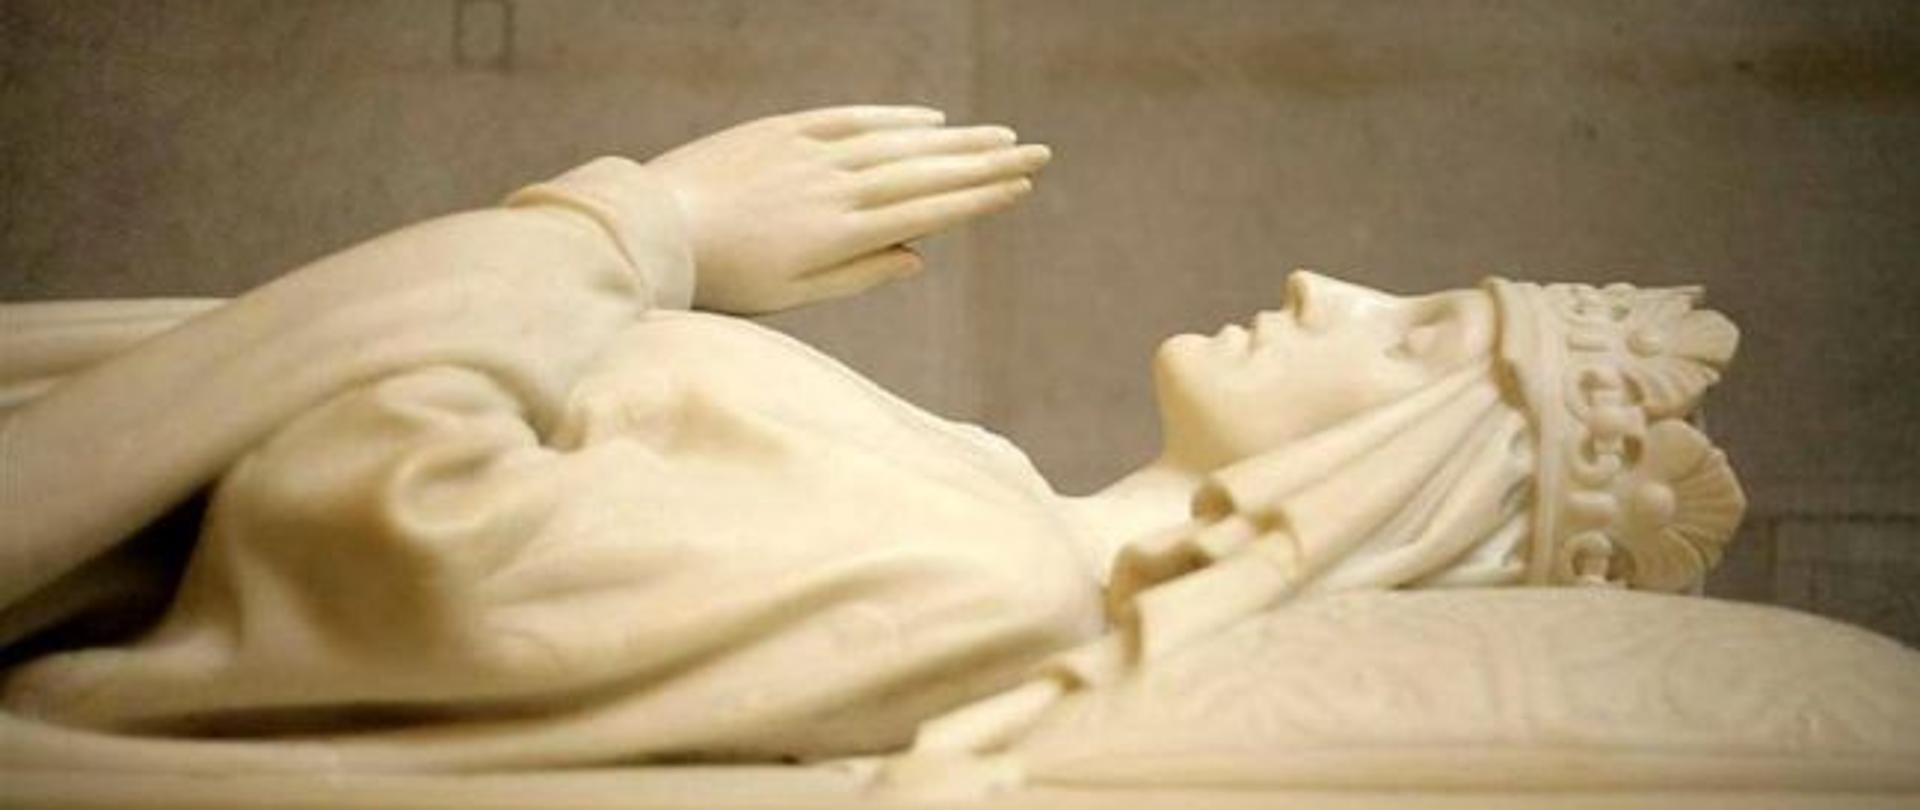 Postać leżącej kobiety z koroną na głowie i złożonymi rękoma do modlitwy wyrzeźbiona w marmurze